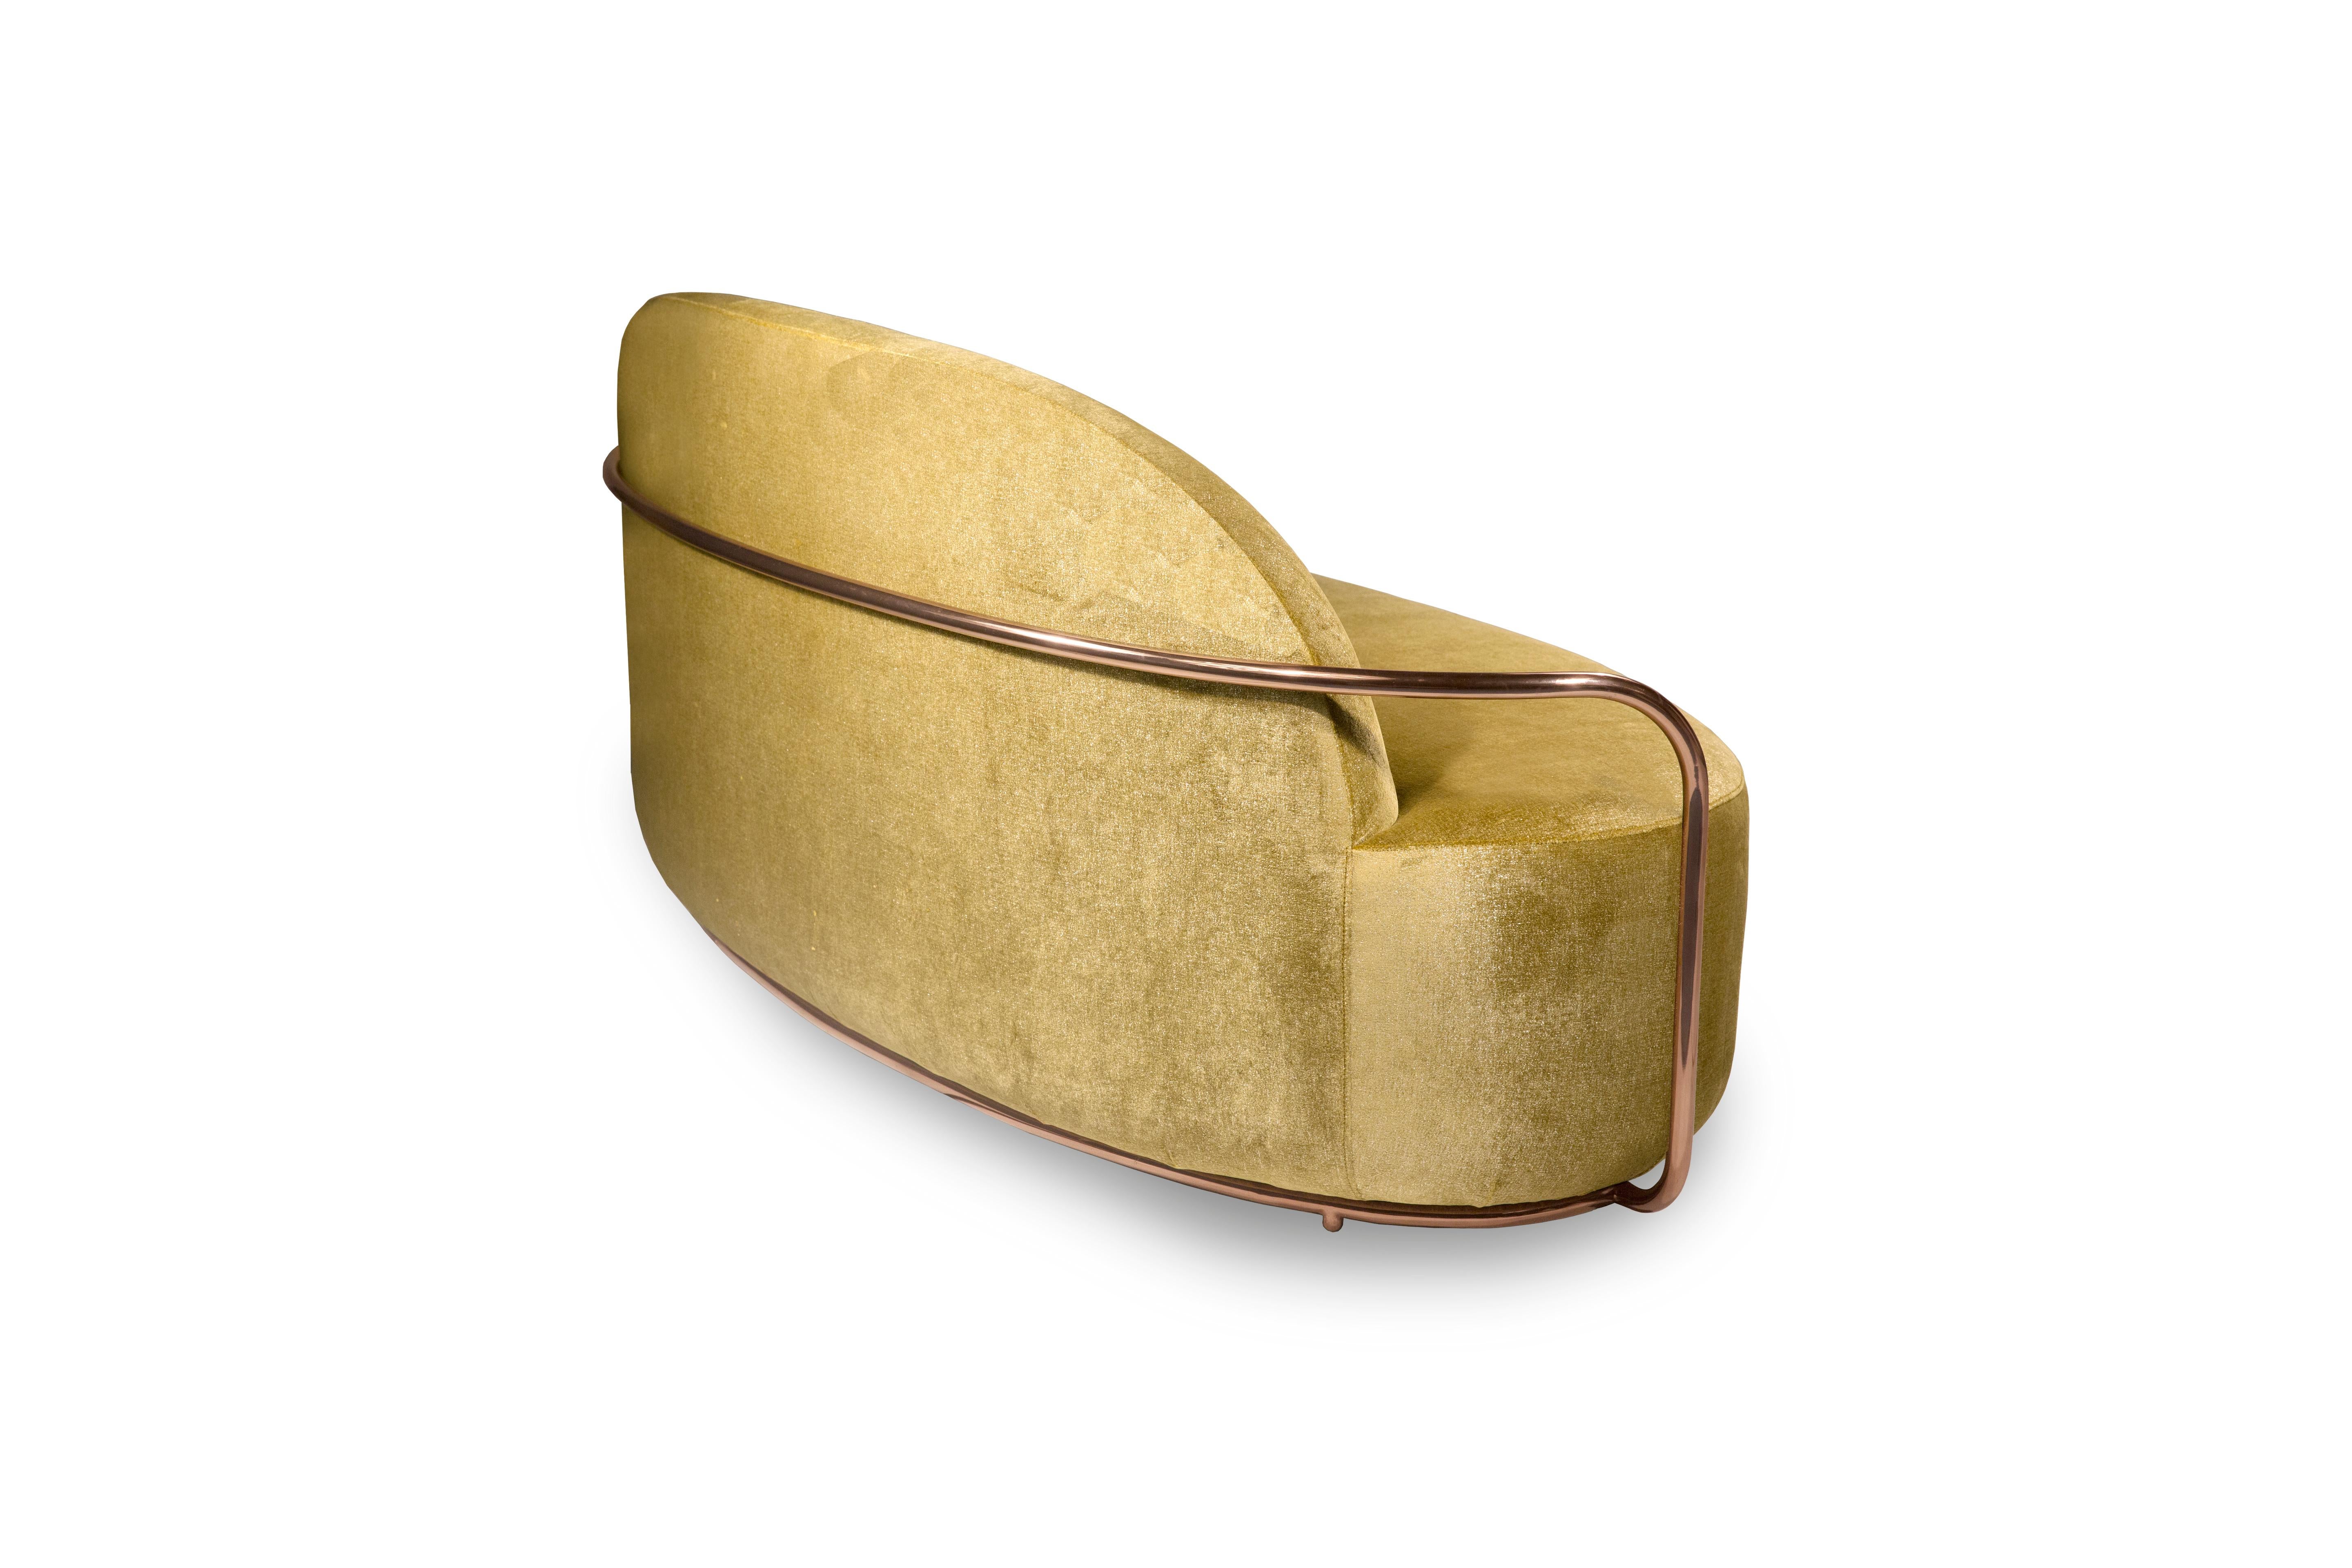 Orion 3 Seat Sofa with Gold Dedar Velvet and Rose Gold Arms von Nika Zupanc ist ein Einsitzer-Sofa mit opulentem goldenem Stoff von Dedar Milano und roségoldenen Metallarmen. Ein besonderes Stück!

Nika Zupanc, eine auffallend renommierte